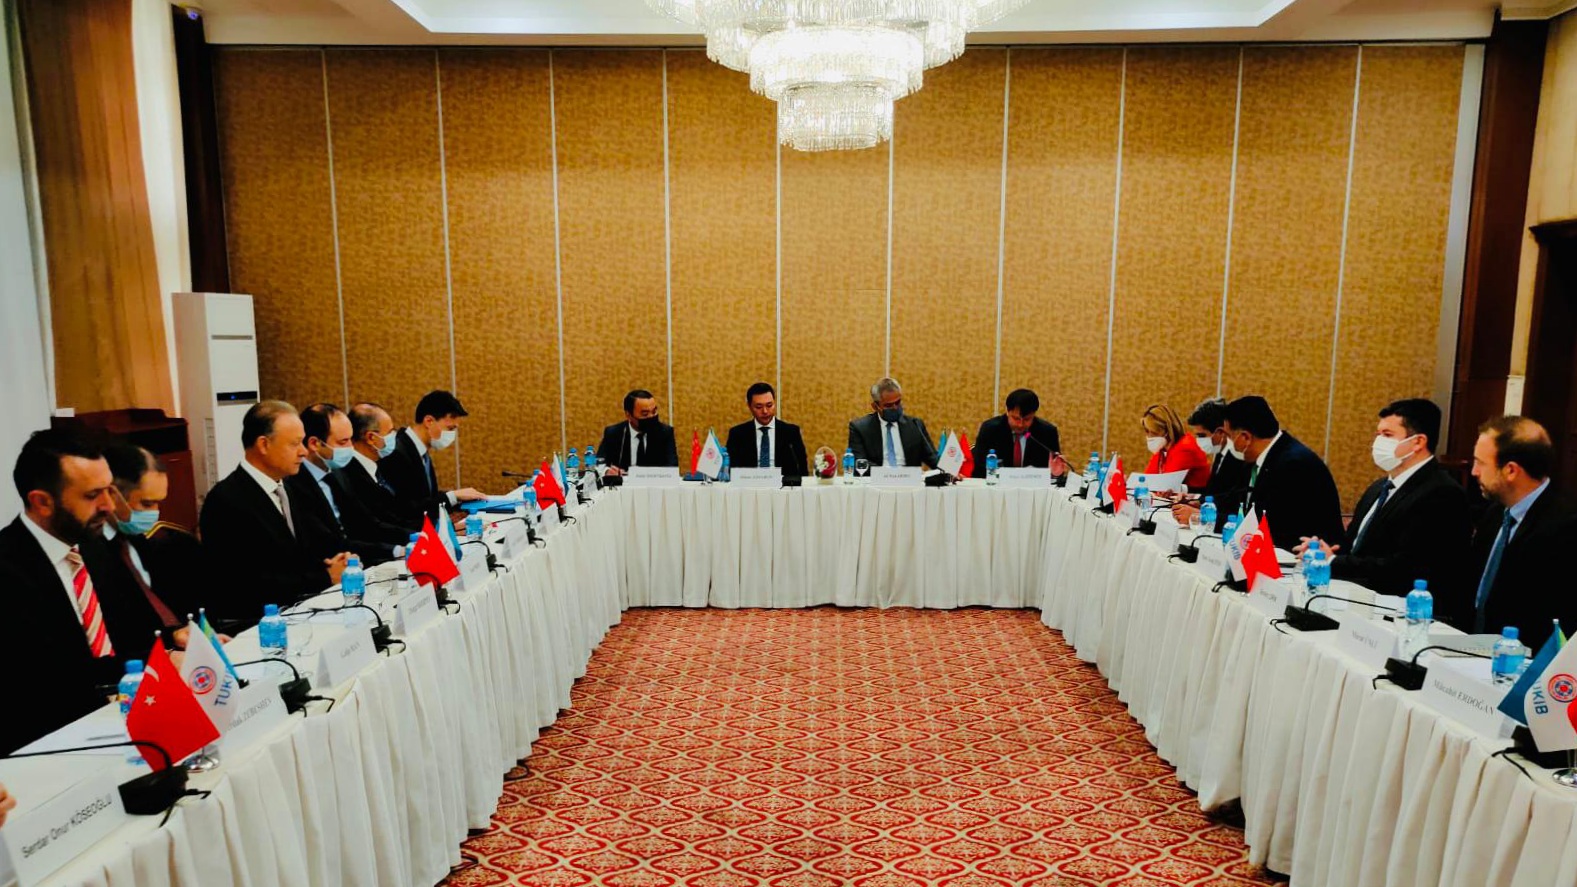 Круглый стол на тему привлечения иностранных инвестиций прошел в Алматы